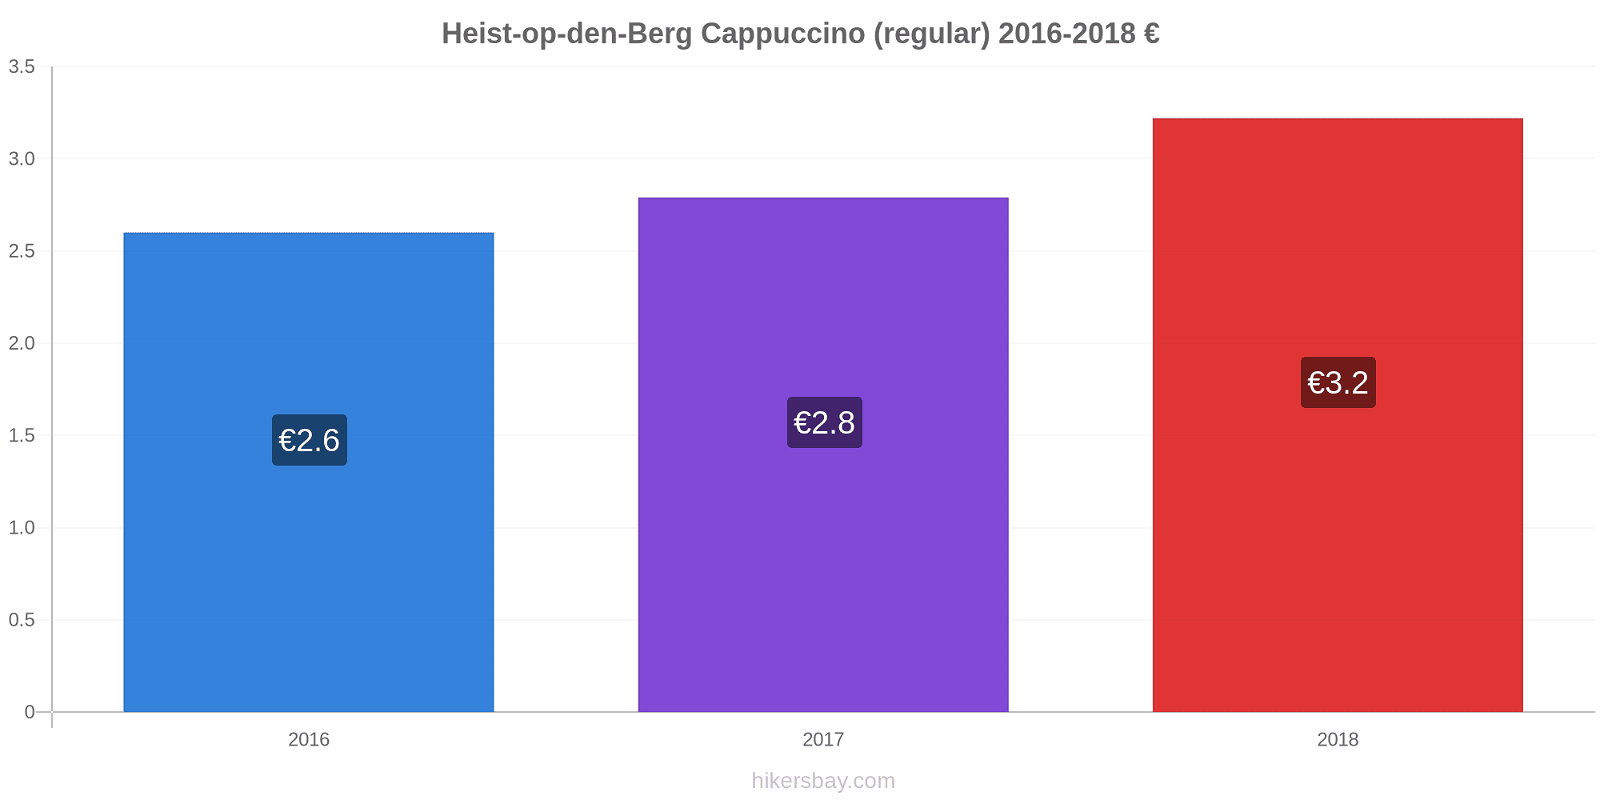 Heist-op-den-Berg price changes Cappuccino (regular) hikersbay.com